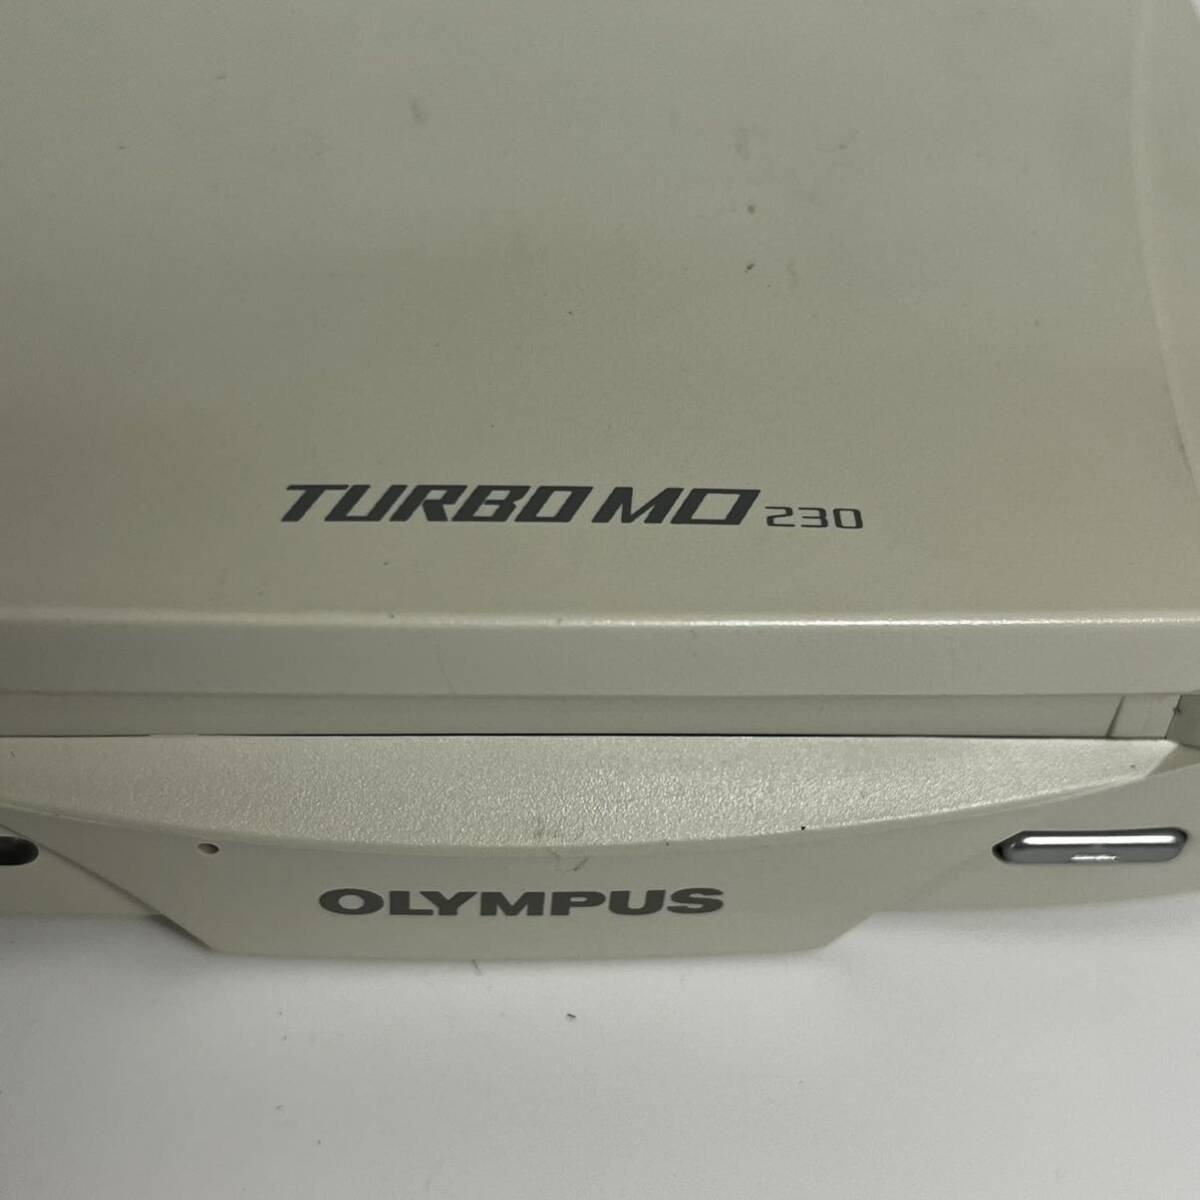 オリンパス OLYMPUS MOS333S TURBO MO 230 通電 スピンアップOK / SCSI ストレージ 白_画像2